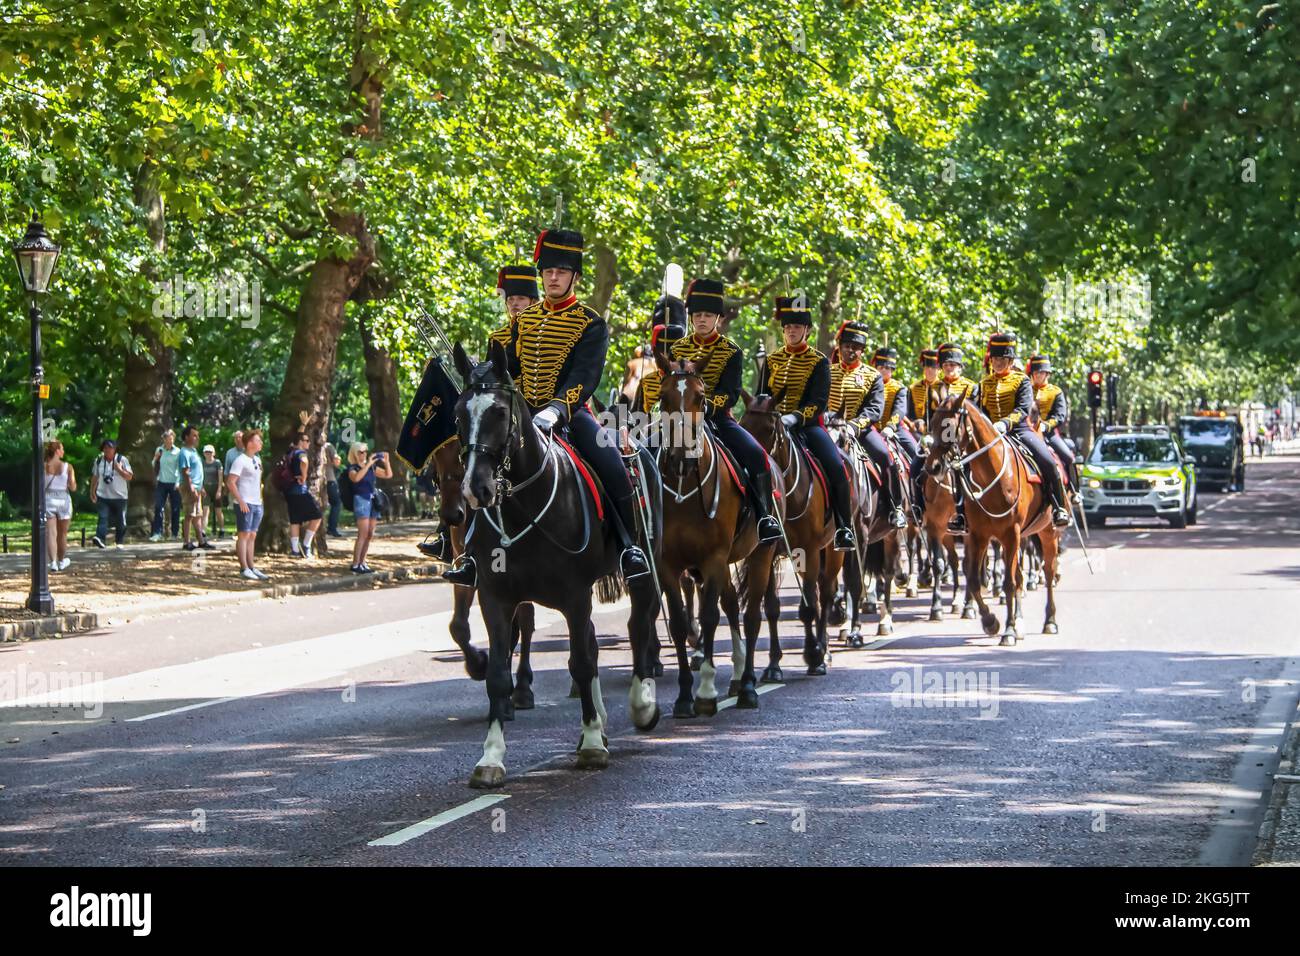 2019 07 24 Londres UK la Reine de la vie garde - chevaux d'équitation - hommes du régiment de Cavalerie de la maison monté en descendant la route près de St James Park avec p Banque D'Images